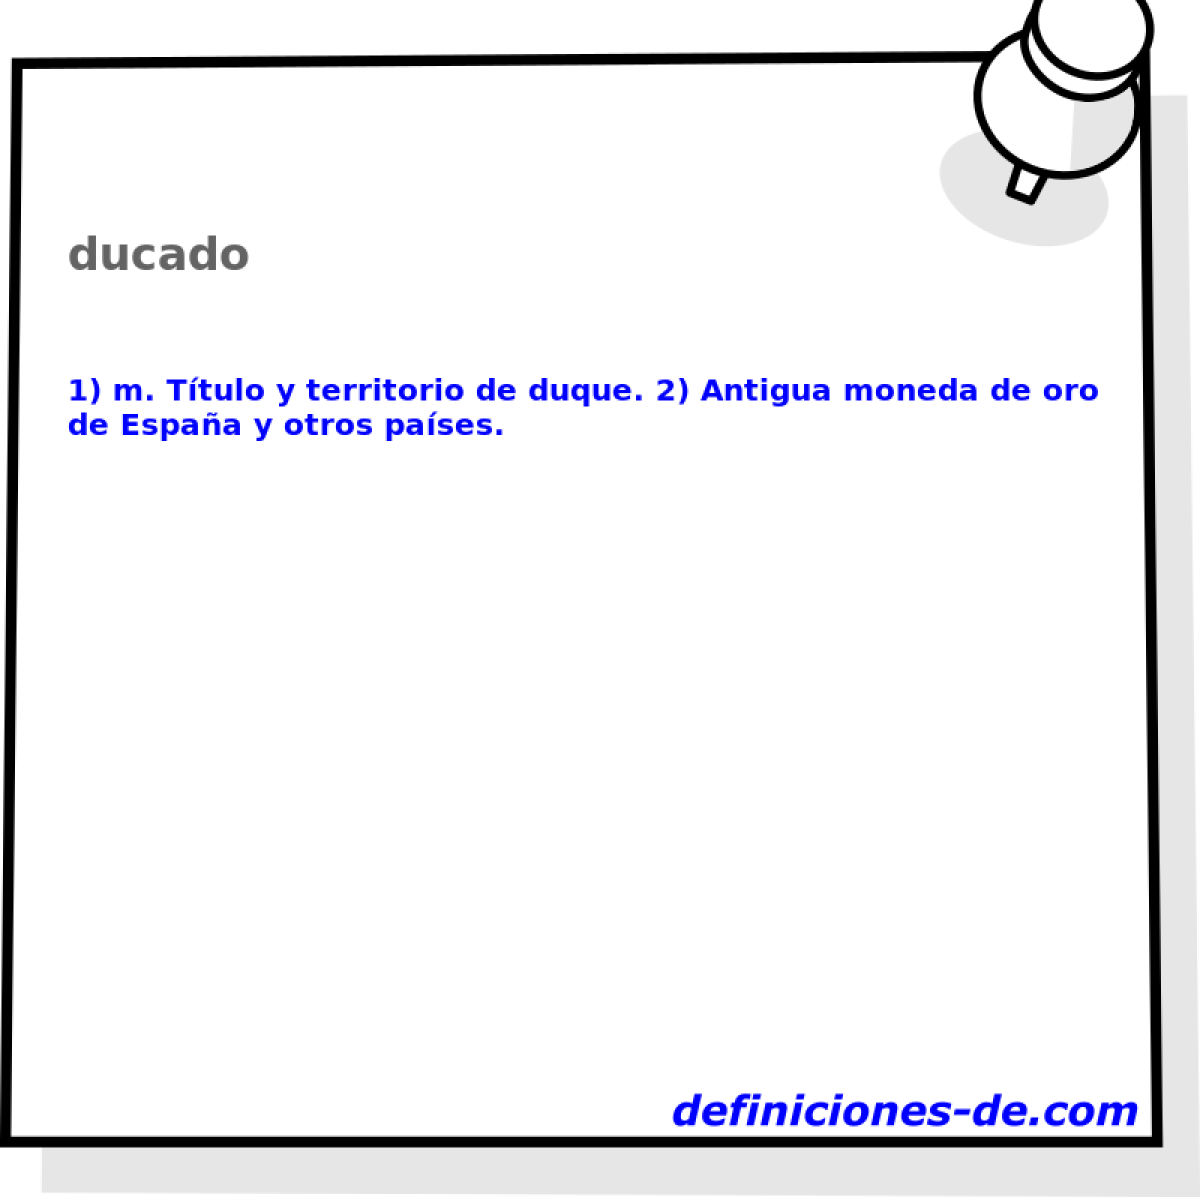 ducado 